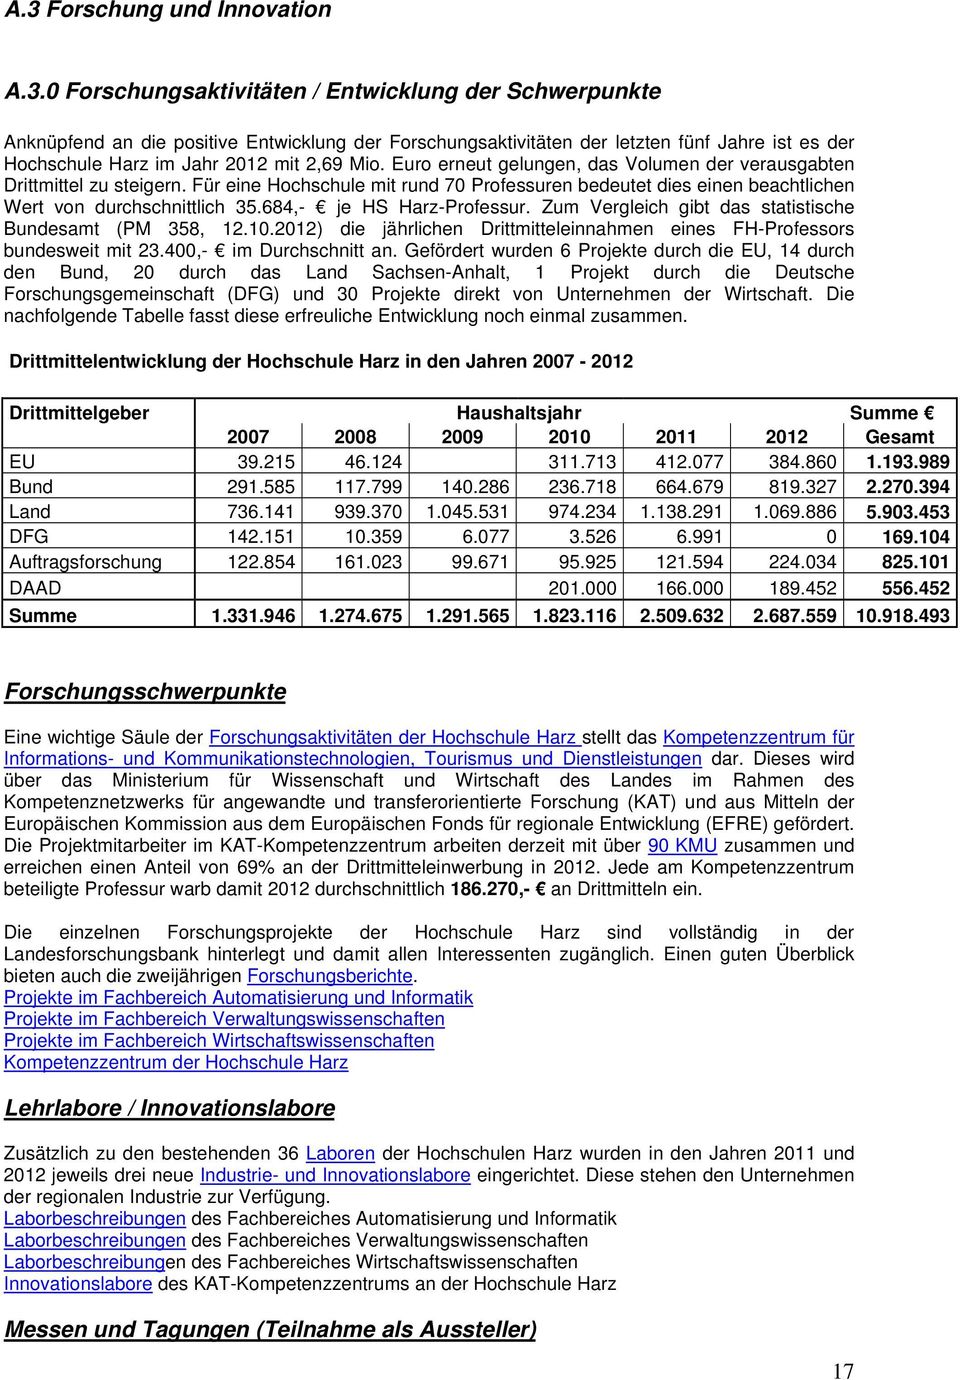 684,- je HS Harz-Professur. Zum Vergleich gibt das statistische Bundesamt (PM 358, 12.10.2012) die jährlichen Drittmitteleinnahmen eines FH-Professors bundesweit mit 23.400,- im Durchschnitt an.